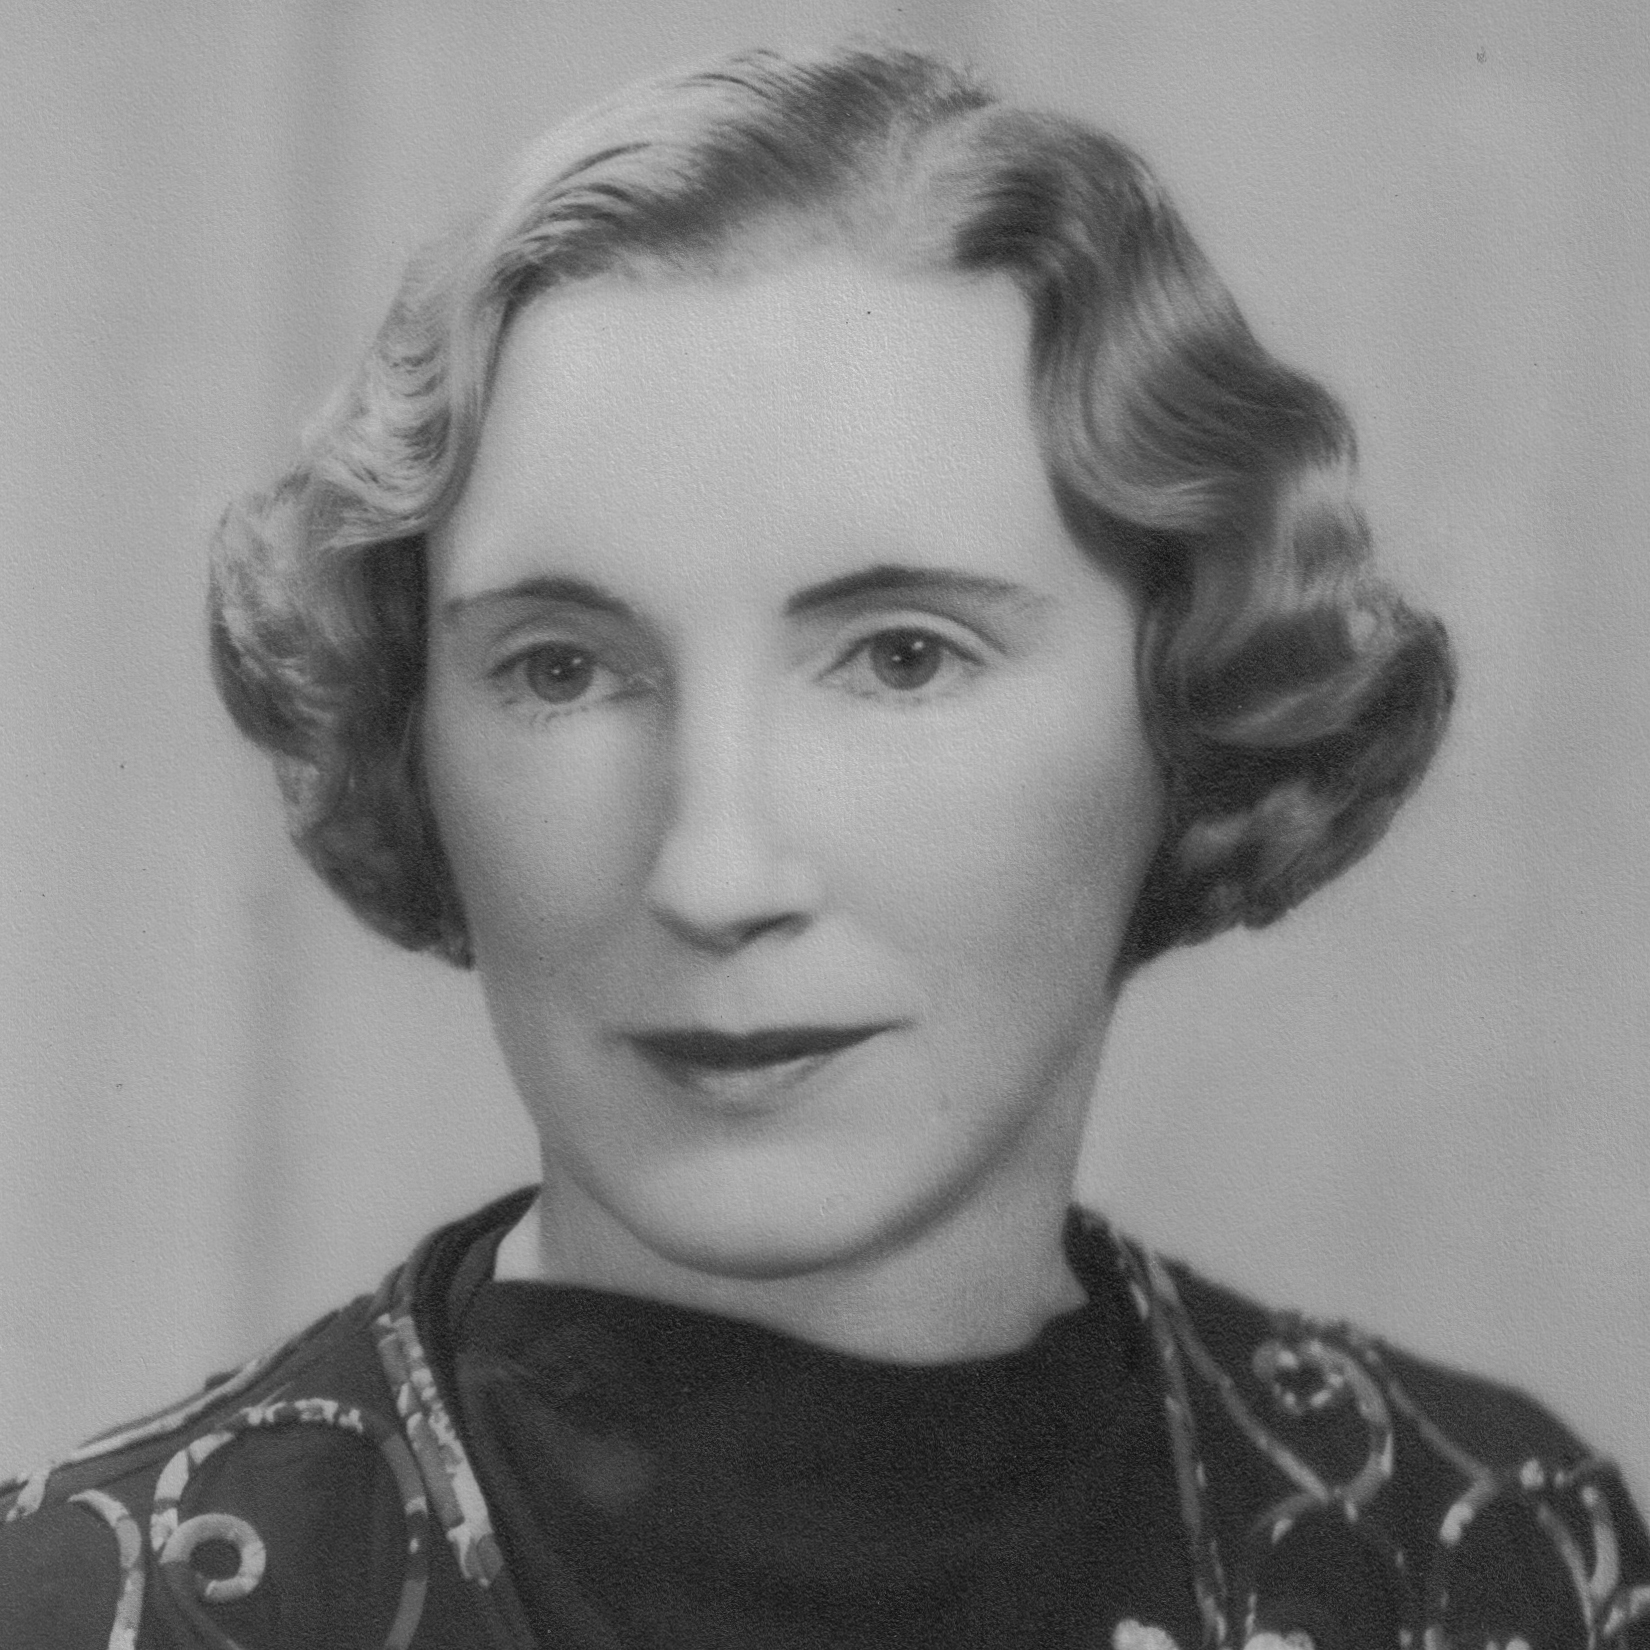 1945-46 Kathleen Daykin